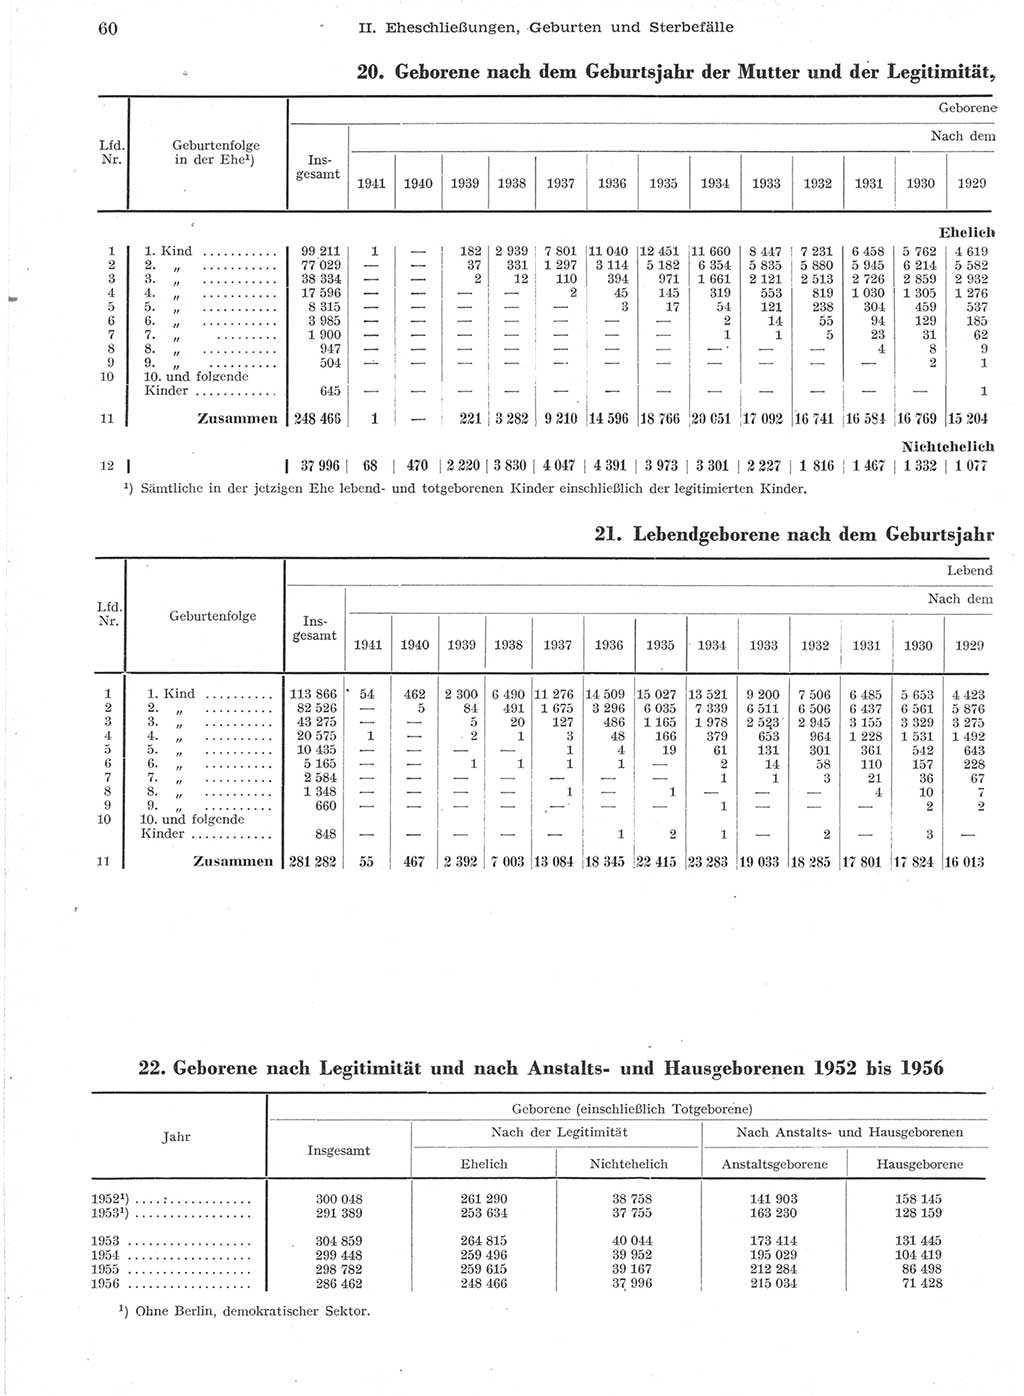 Statistisches Jahrbuch der Deutschen Demokratischen Republik (DDR) 1957, Seite 60 (Stat. Jb. DDR 1957, S. 60)